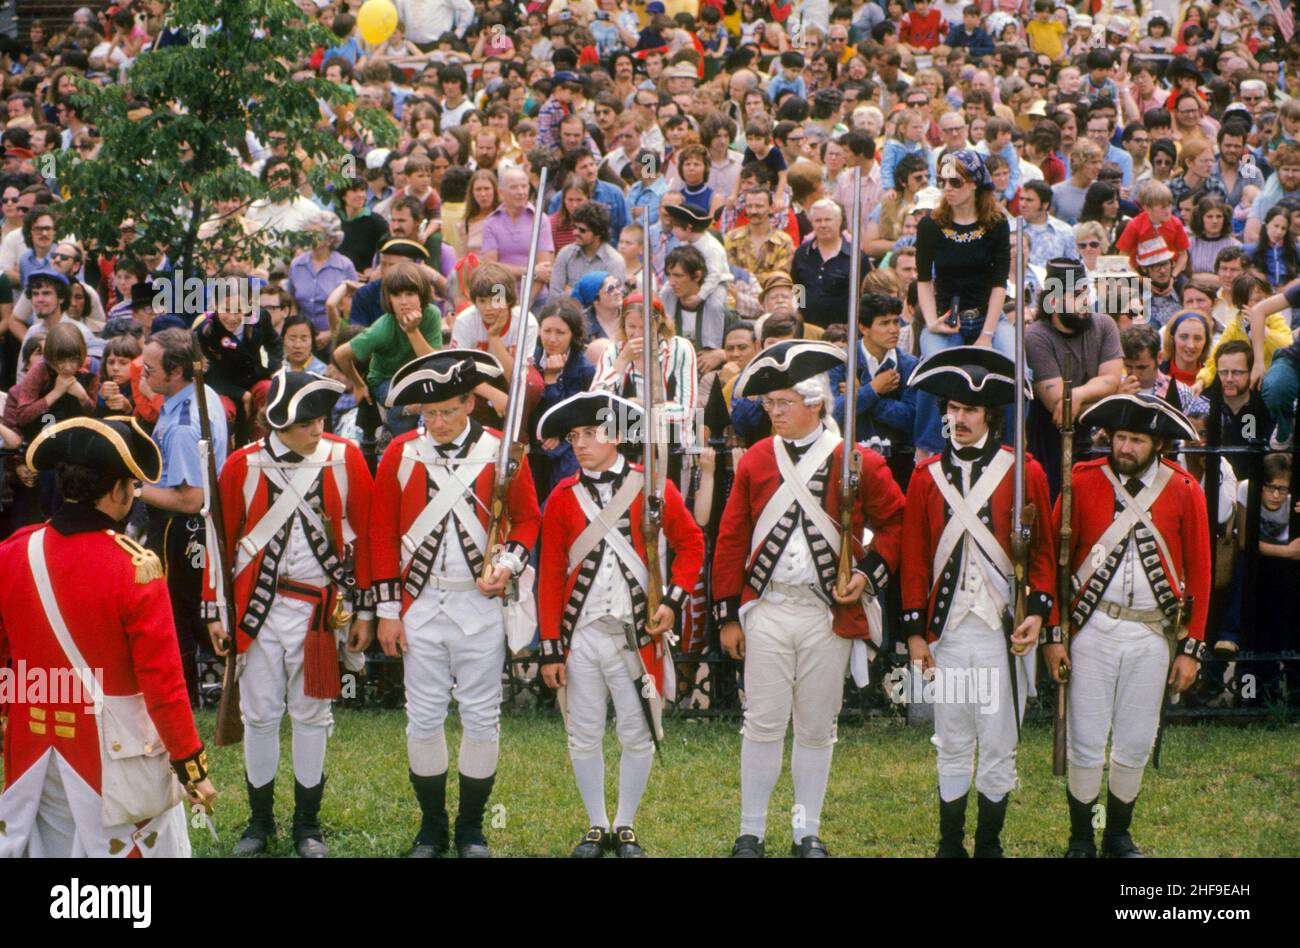 Gli attori volontari in uniforme sono in scena una rievocazione della battaglia della Rivoluzione americana di Bunker Hill nella sede originale a Charlestown, ma. Foto Stock